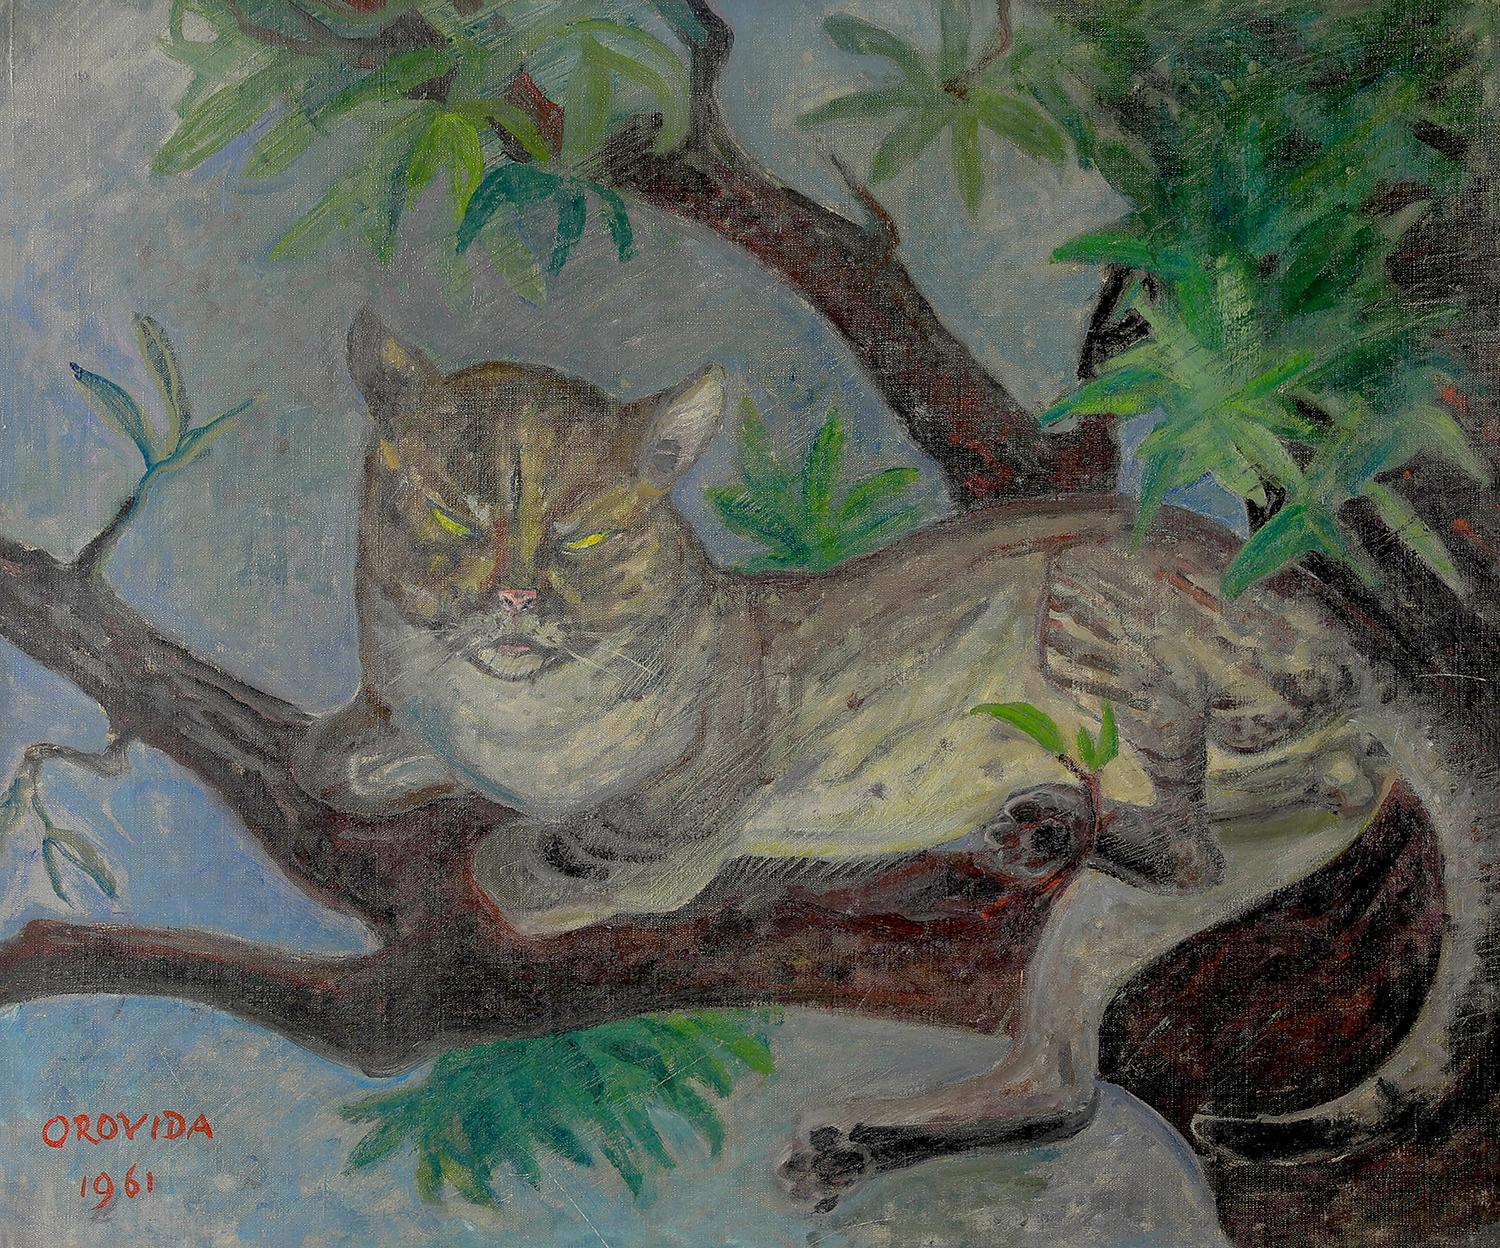 Tom Cat par Orovida Pissarro - Peinture à l'huile de chat, 1961